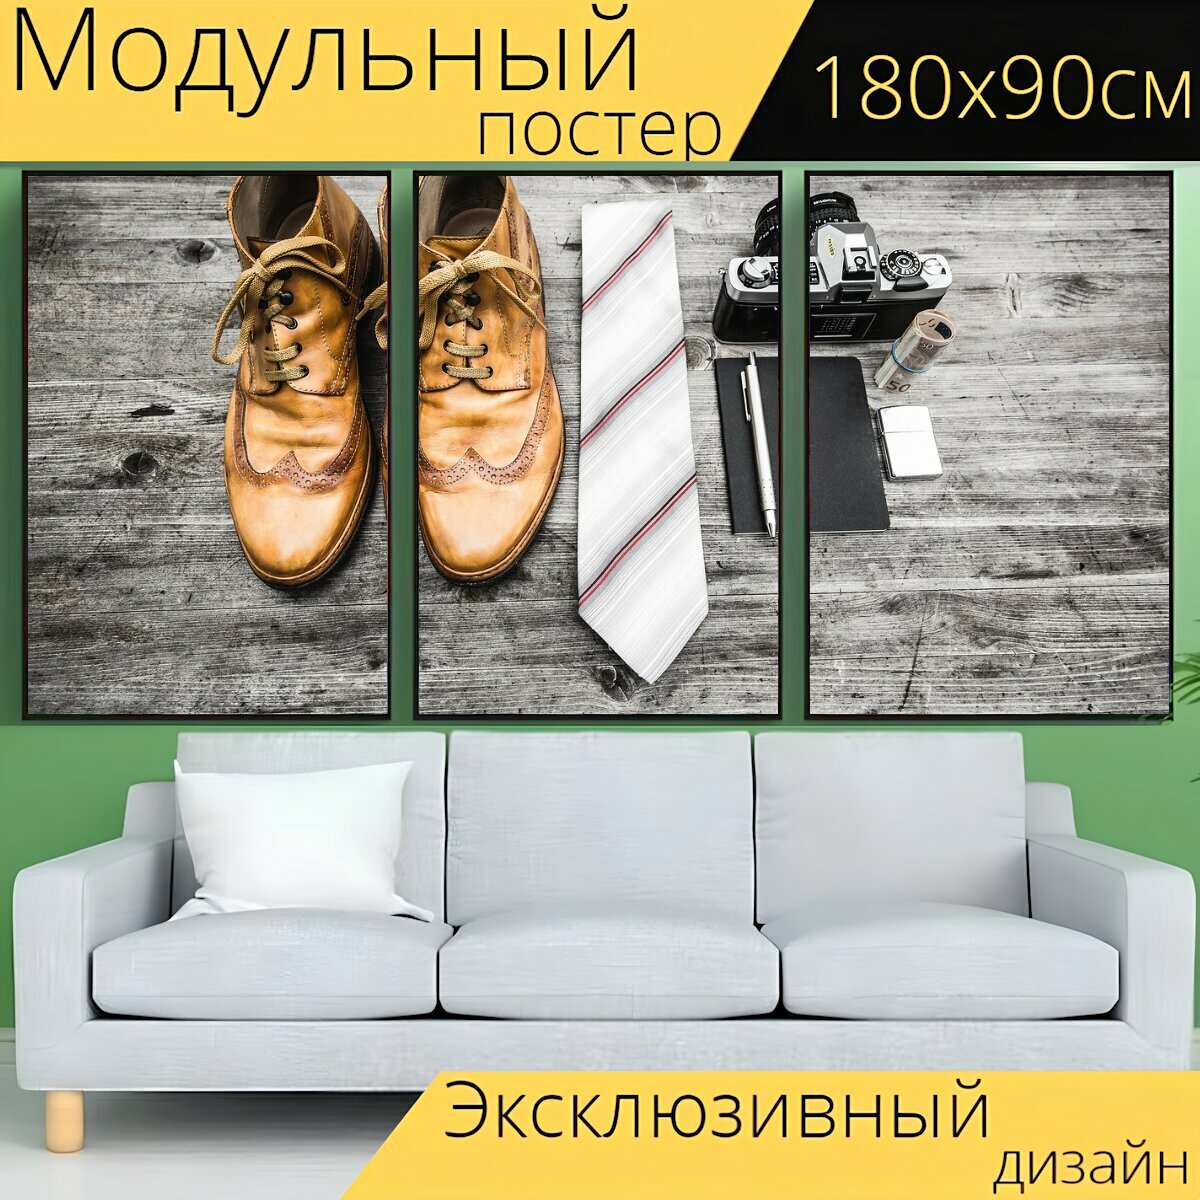 Модульный постер "Кожа, туфли, сапоги" 180 x 90 см. для интерьера